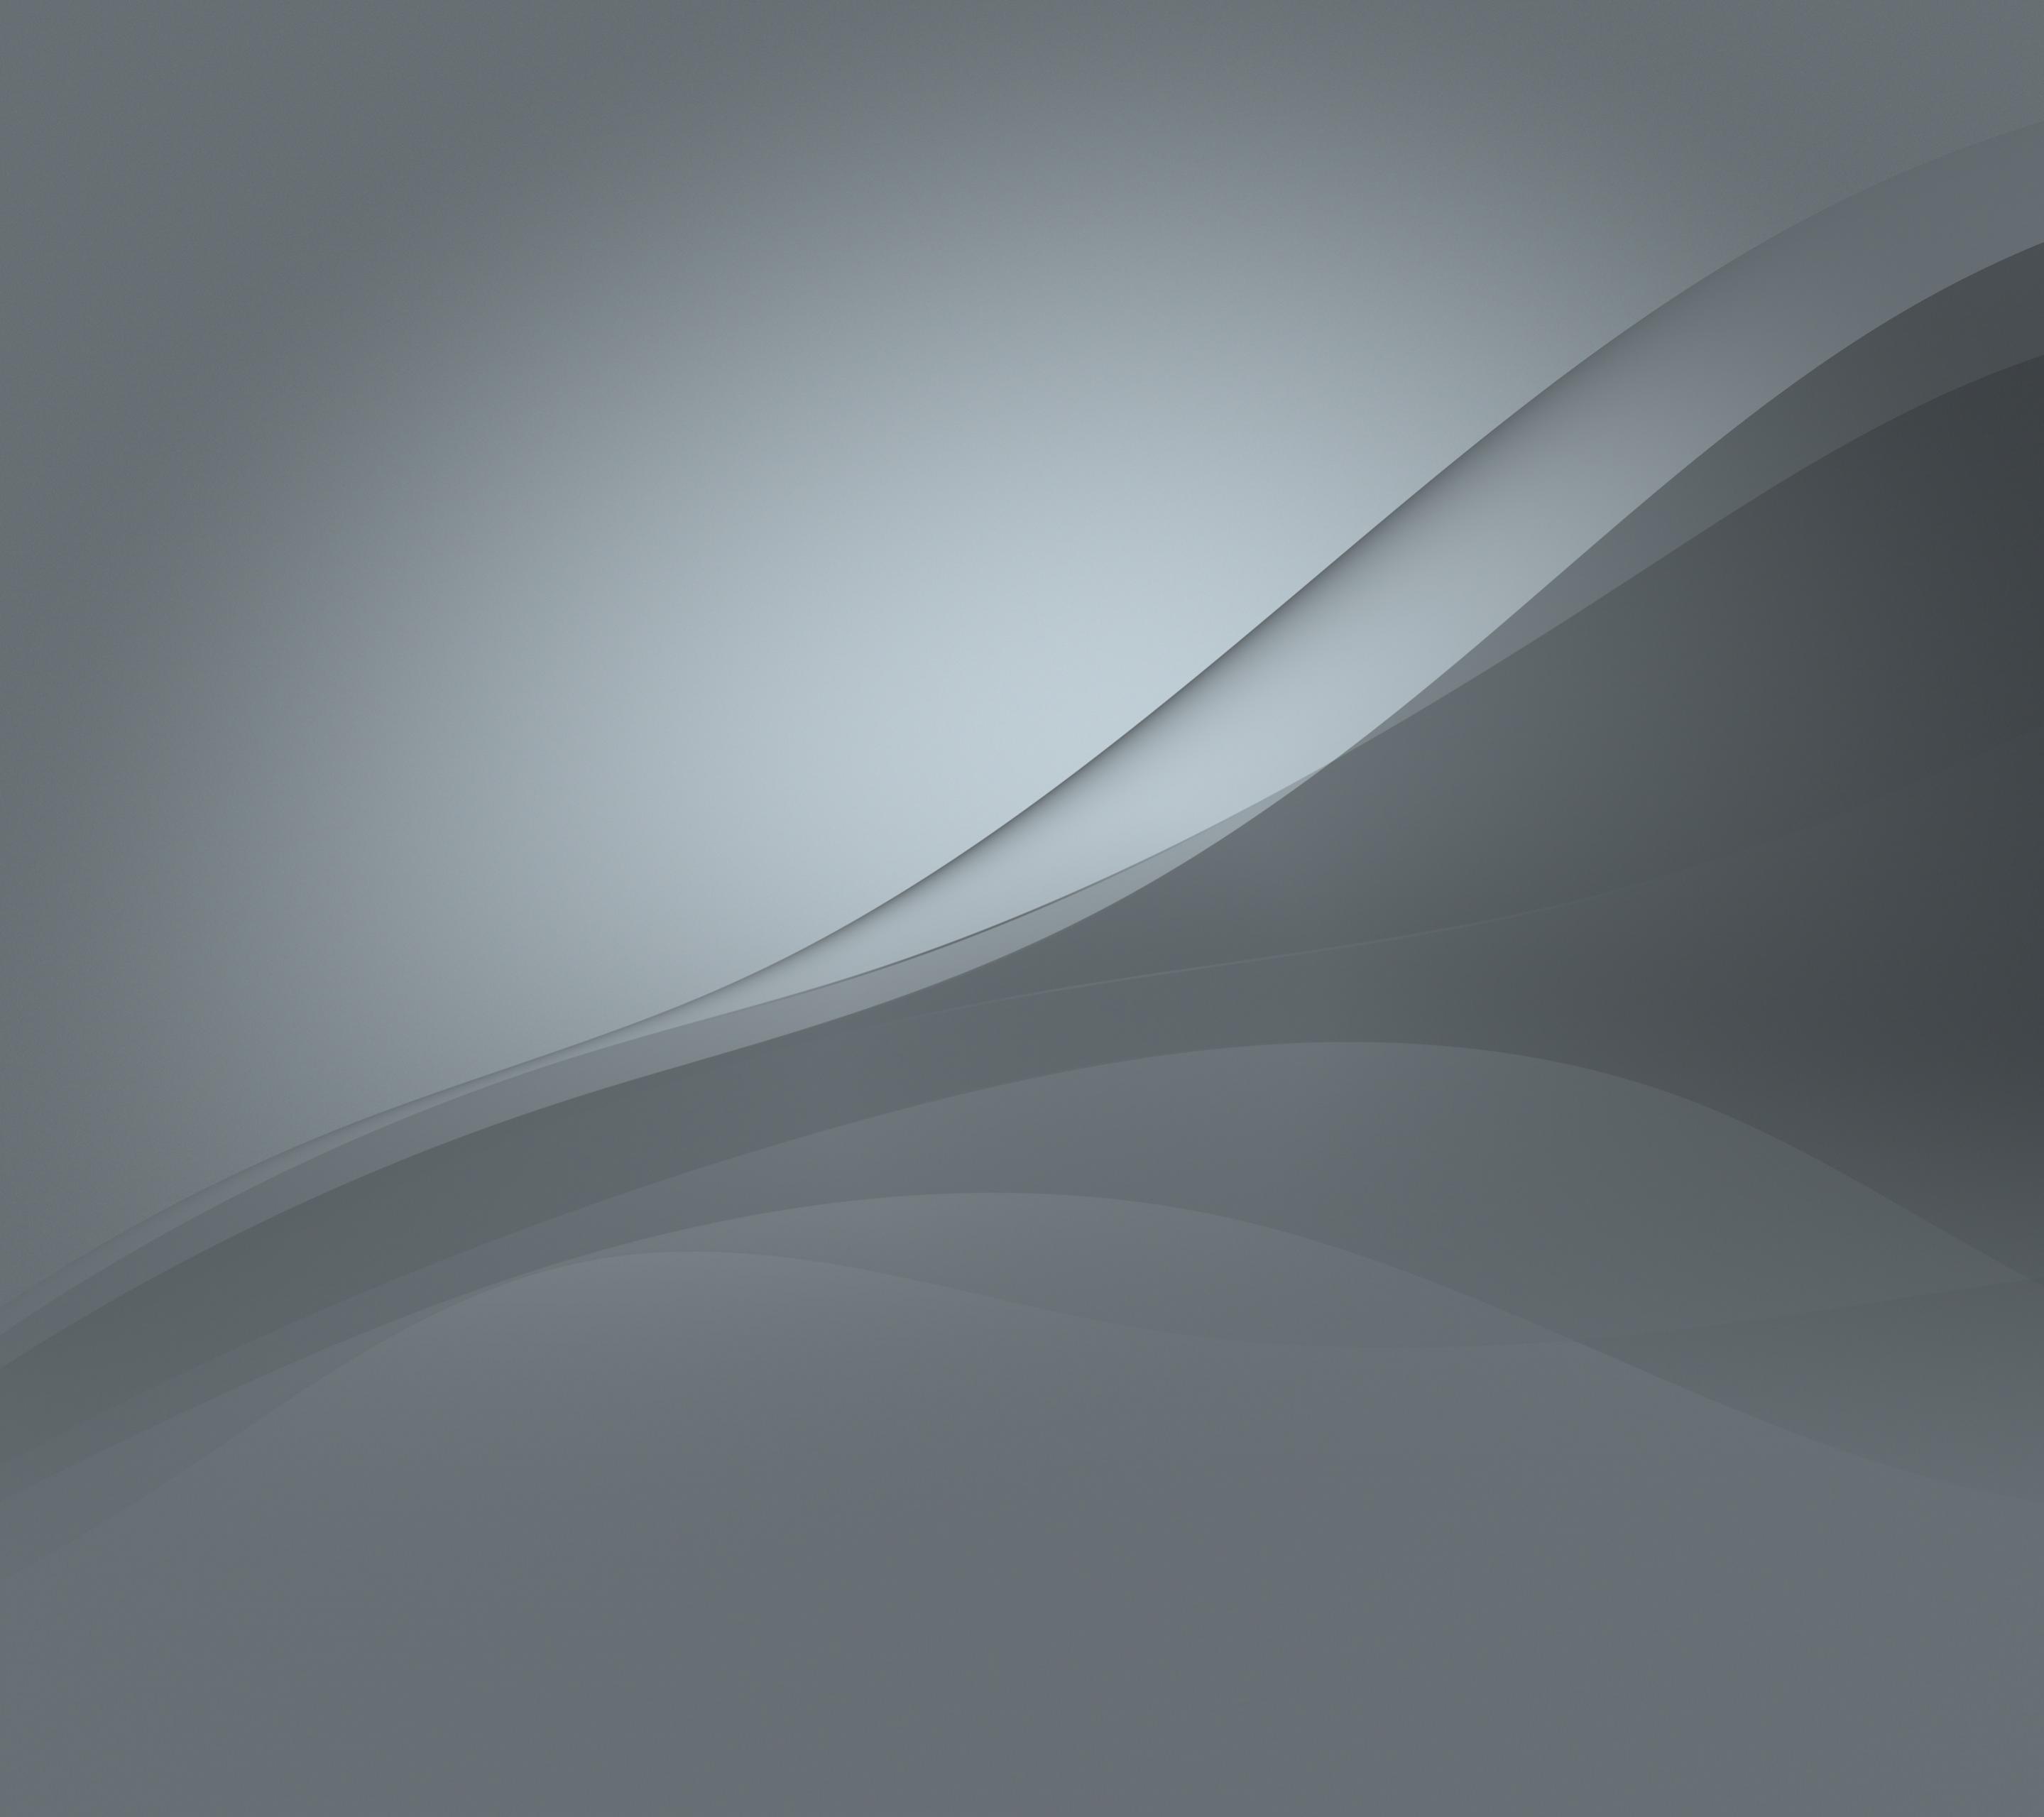 소니 엑스 페리아 z5에 대한 배경 화면,하얀,선,하늘,건축물,검정색과 흰색